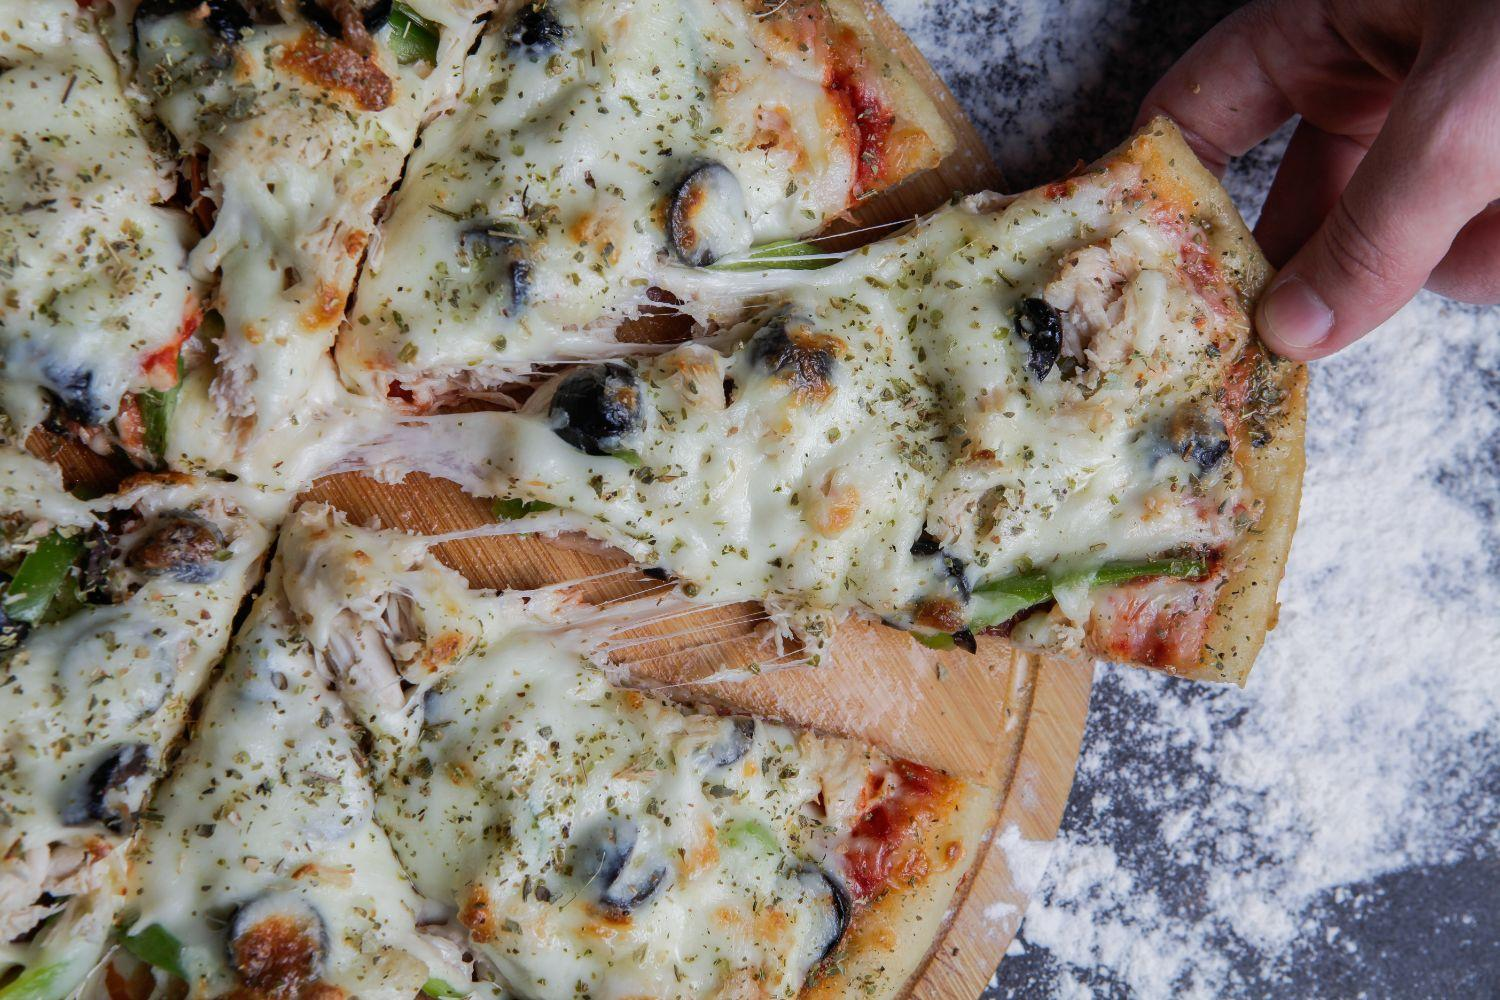 Optez pour la pizza surgelee lors de votre pause repas